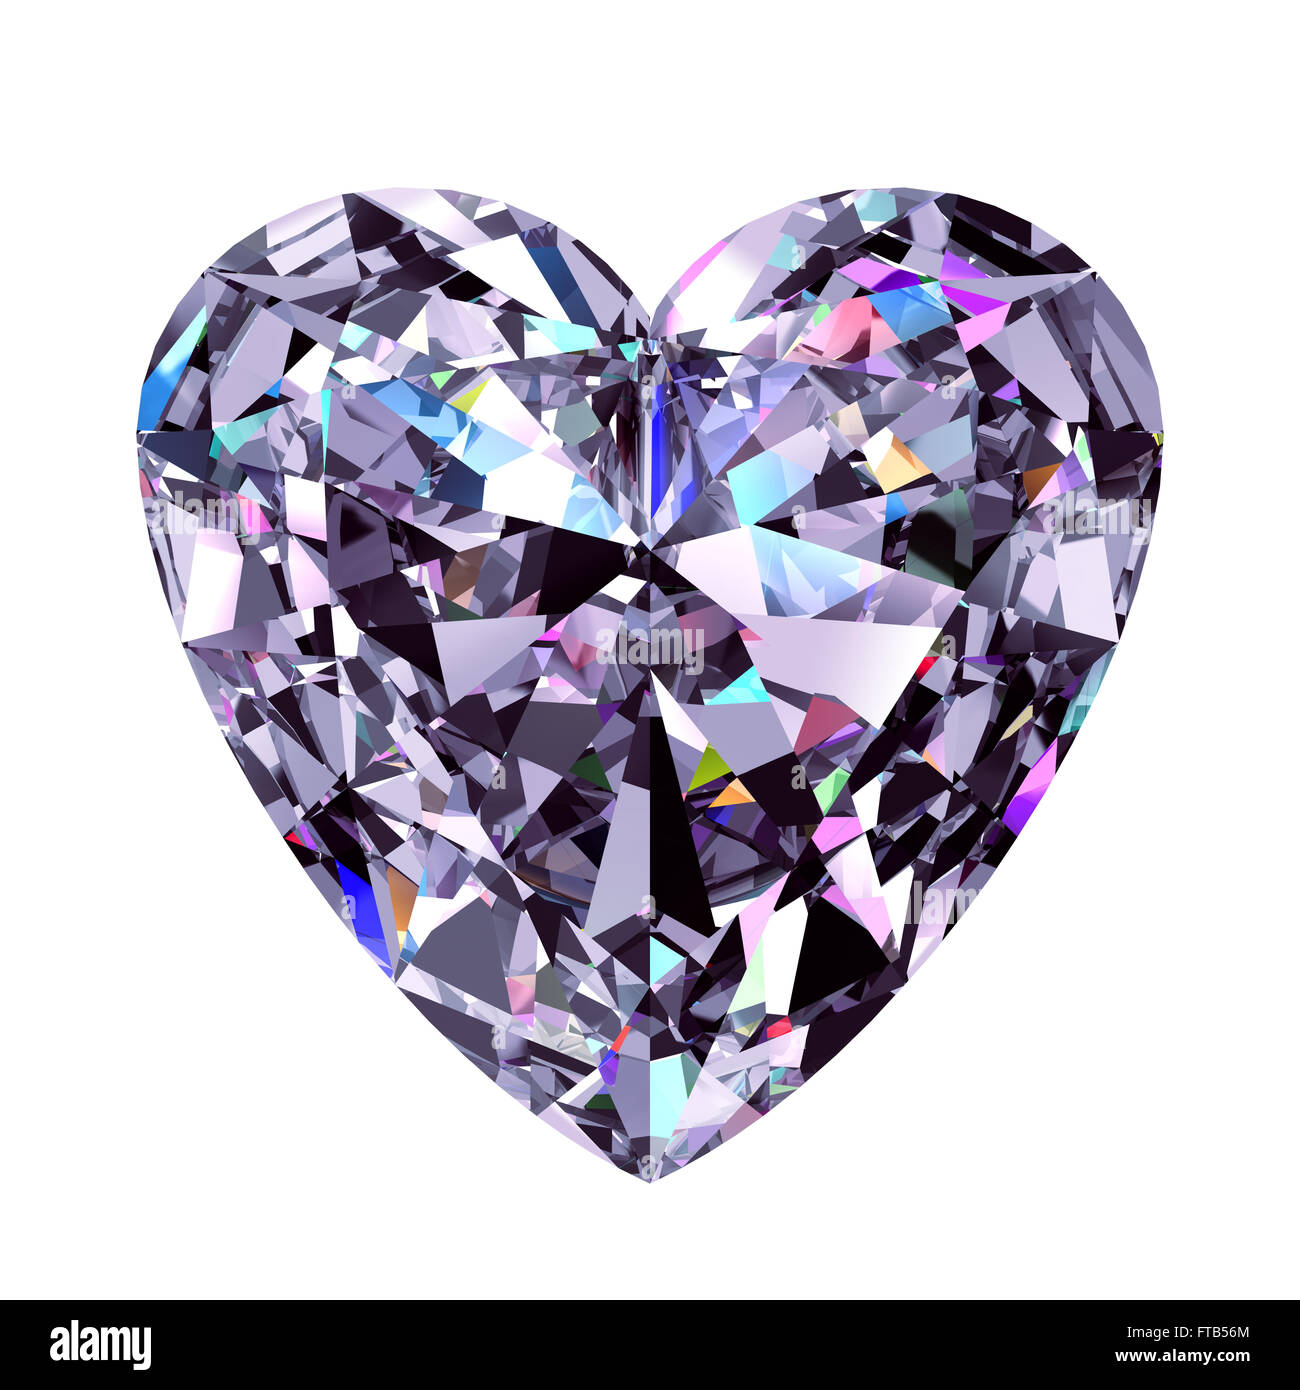 Diamond Heart. 3D Model Over White Background. Stock Photo